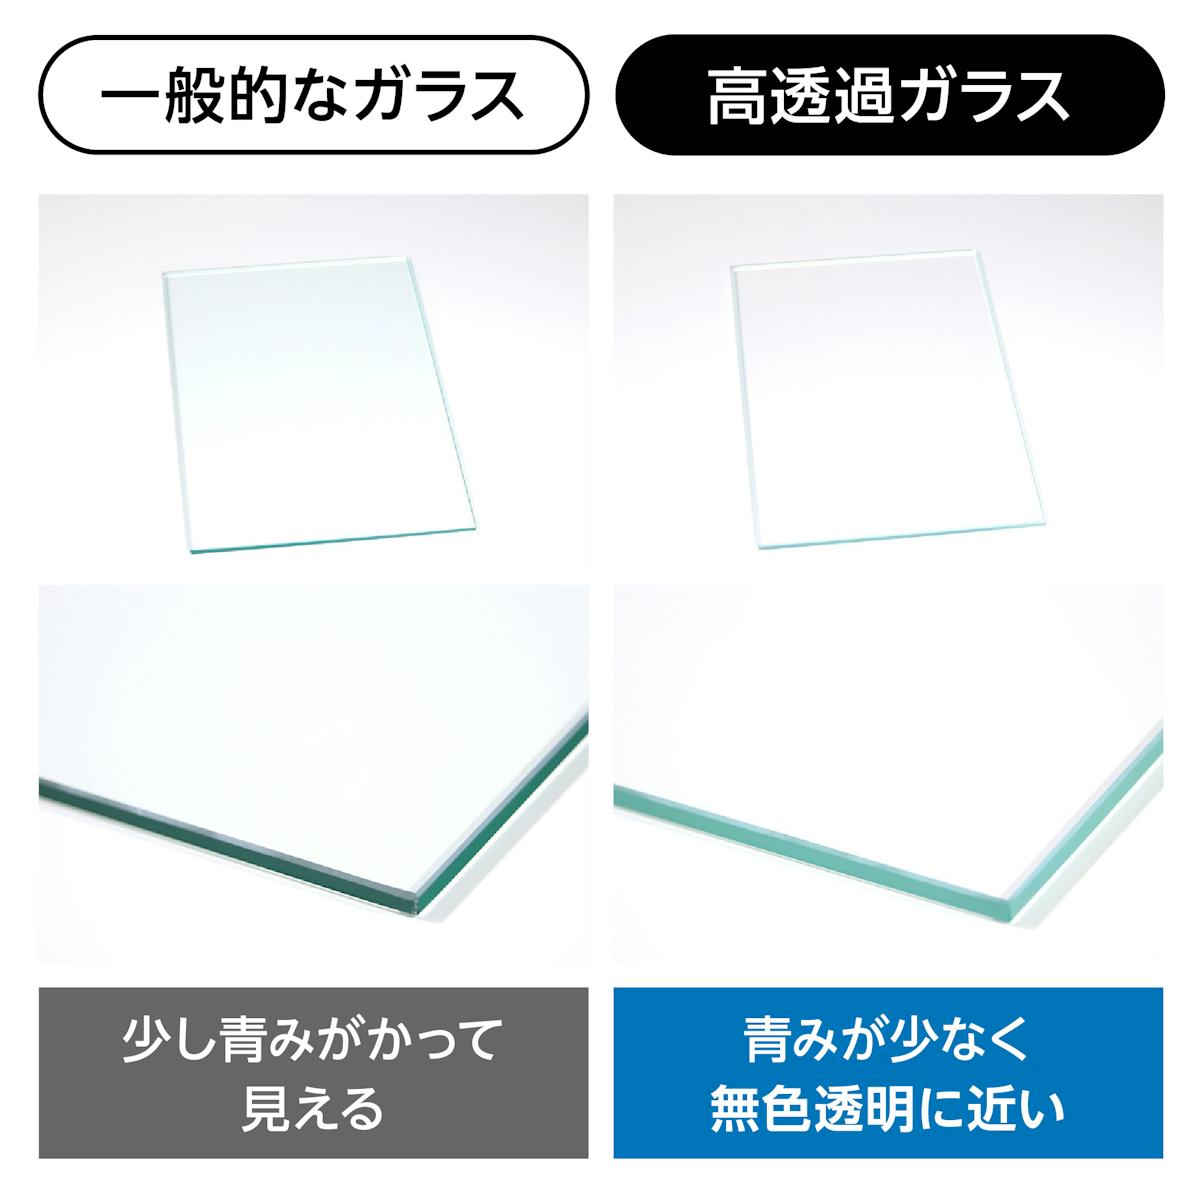 ホワイトガラス(ラコベル・マテラック) - 高透過ガラスとは／青みが少なく無色透明に近いガラス